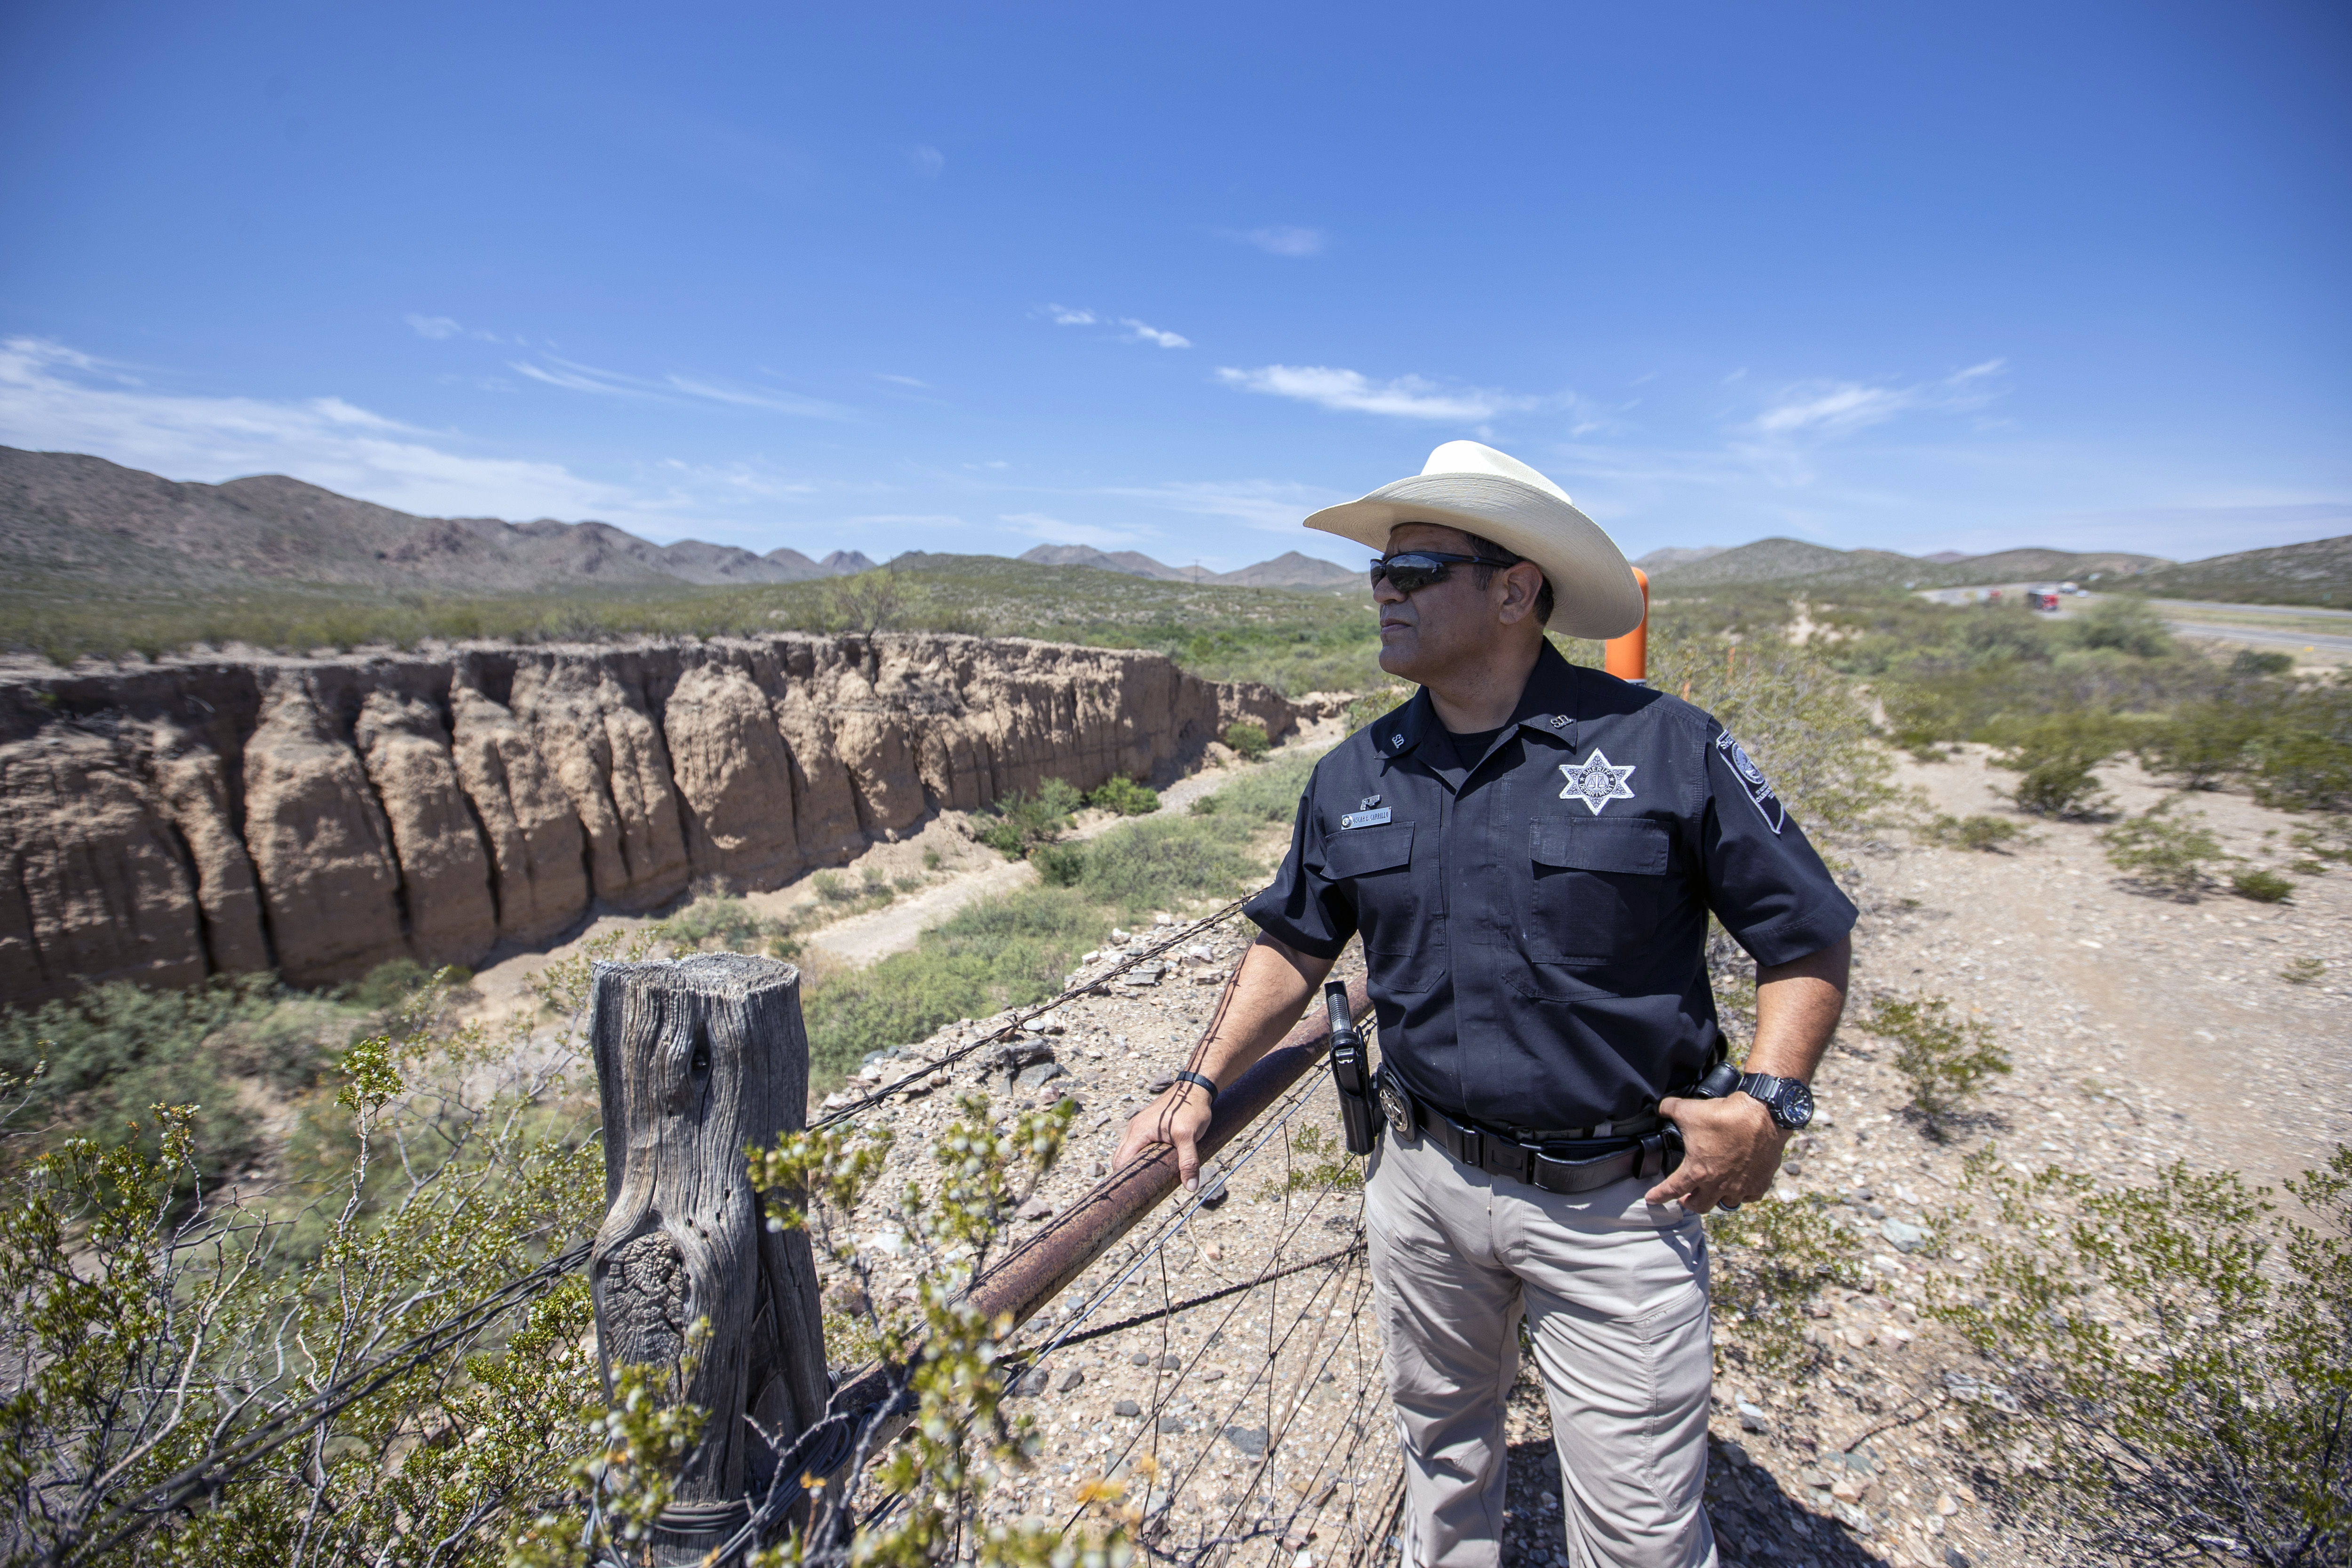 El sheriff Oscar Carrillo del condado de Culberson observa el paisaje desértico cerca de la Interestatal 10, arriba a la derecha, en Van Horn, Texas, el 10 de agosto de 2021. (Ivan Pierre Aguirre/The New York Times)